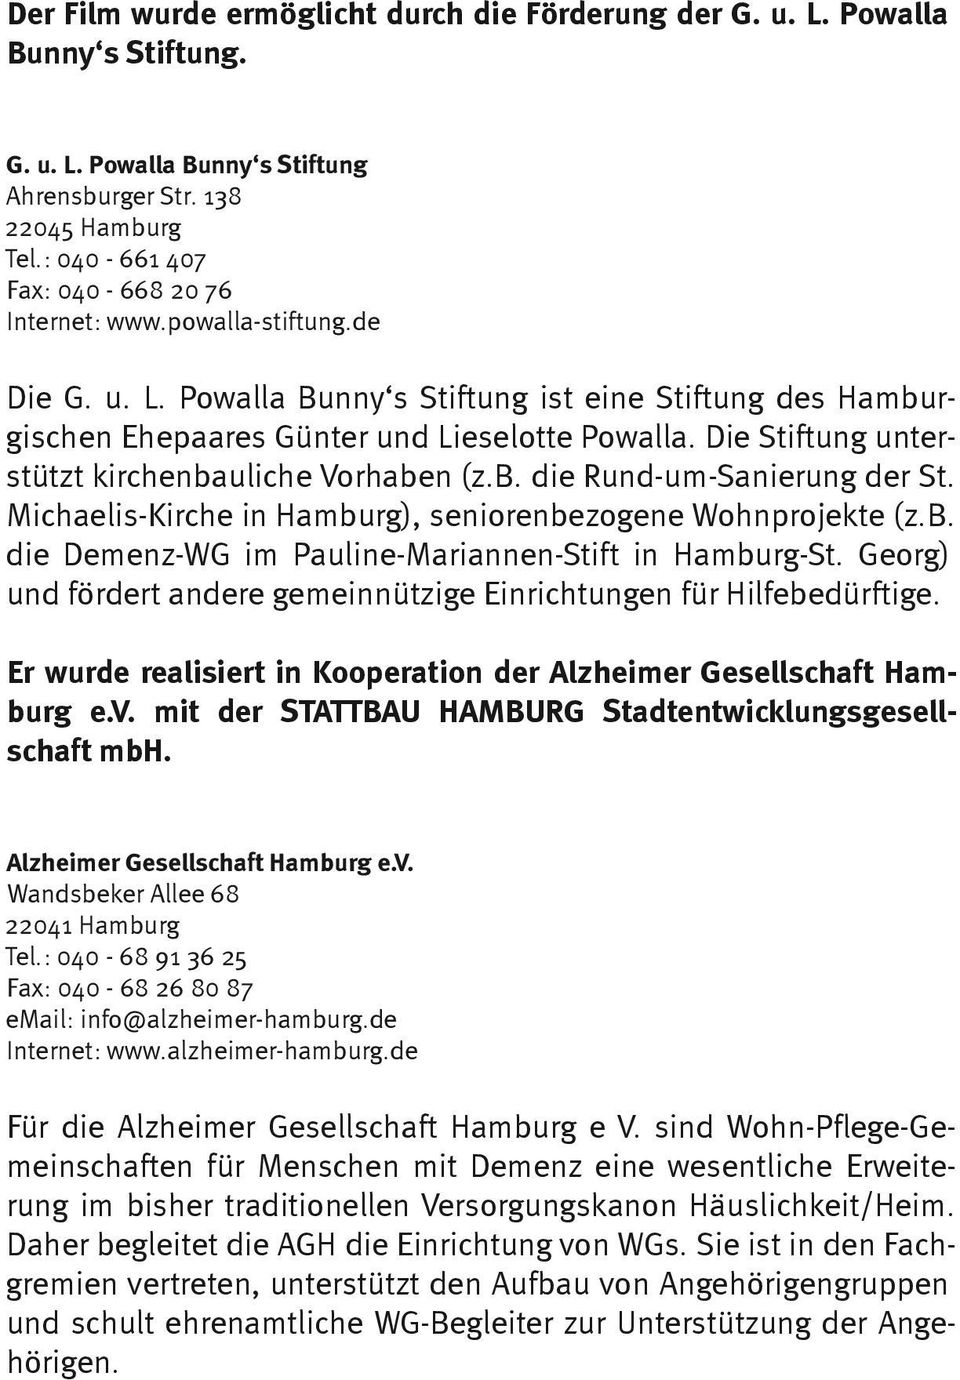 Die Stiftung unterstützt kirchenbauliche Vorhaben (z.b. die Rund-um-Sanierung der St. Michaelis-Kirche in Hamburg), seniorenbezogene Wohnprojekte (z.b. die Demenz-WG im Pauline-Mariannen-Stift in Hamburg-St.